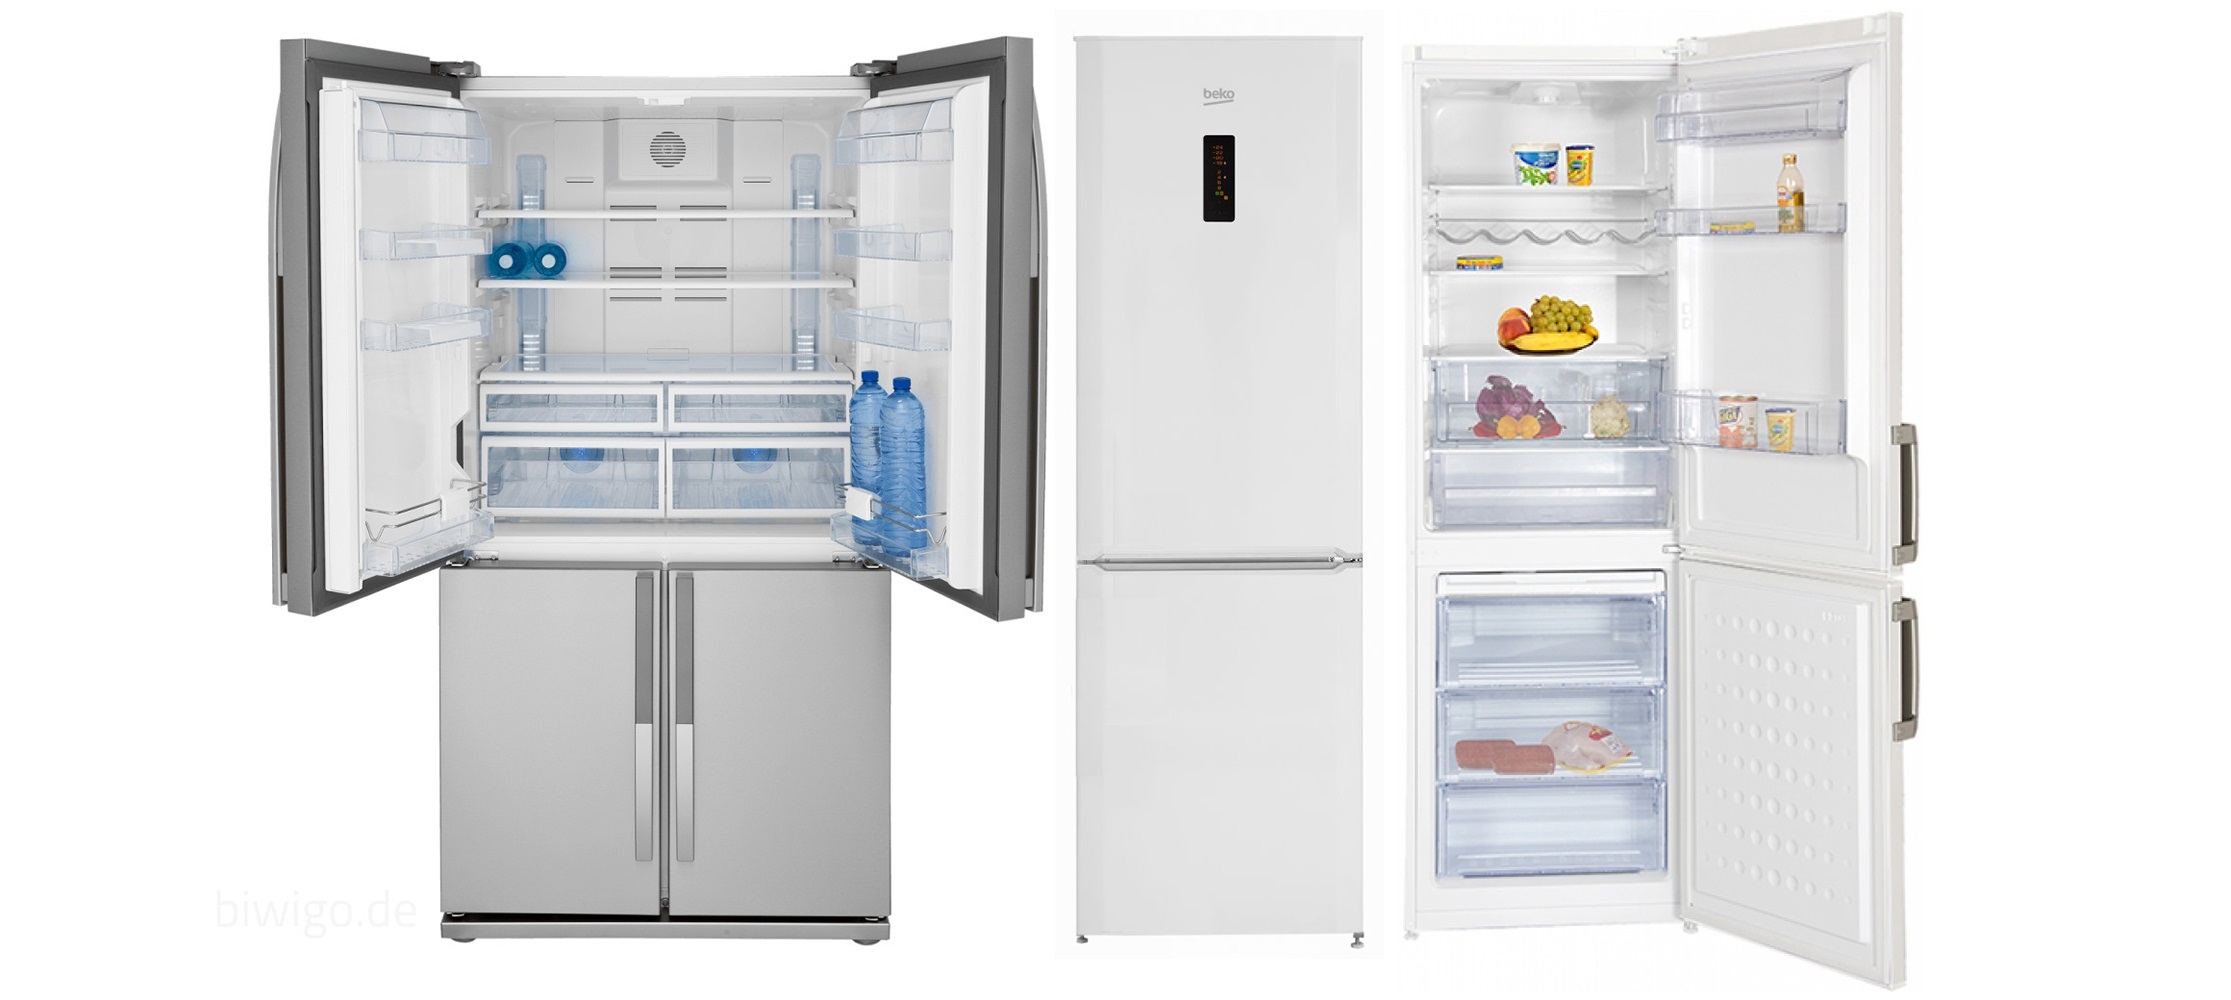 Chladničky Beko - kvalitné spotrebiče s lákavými funkciami